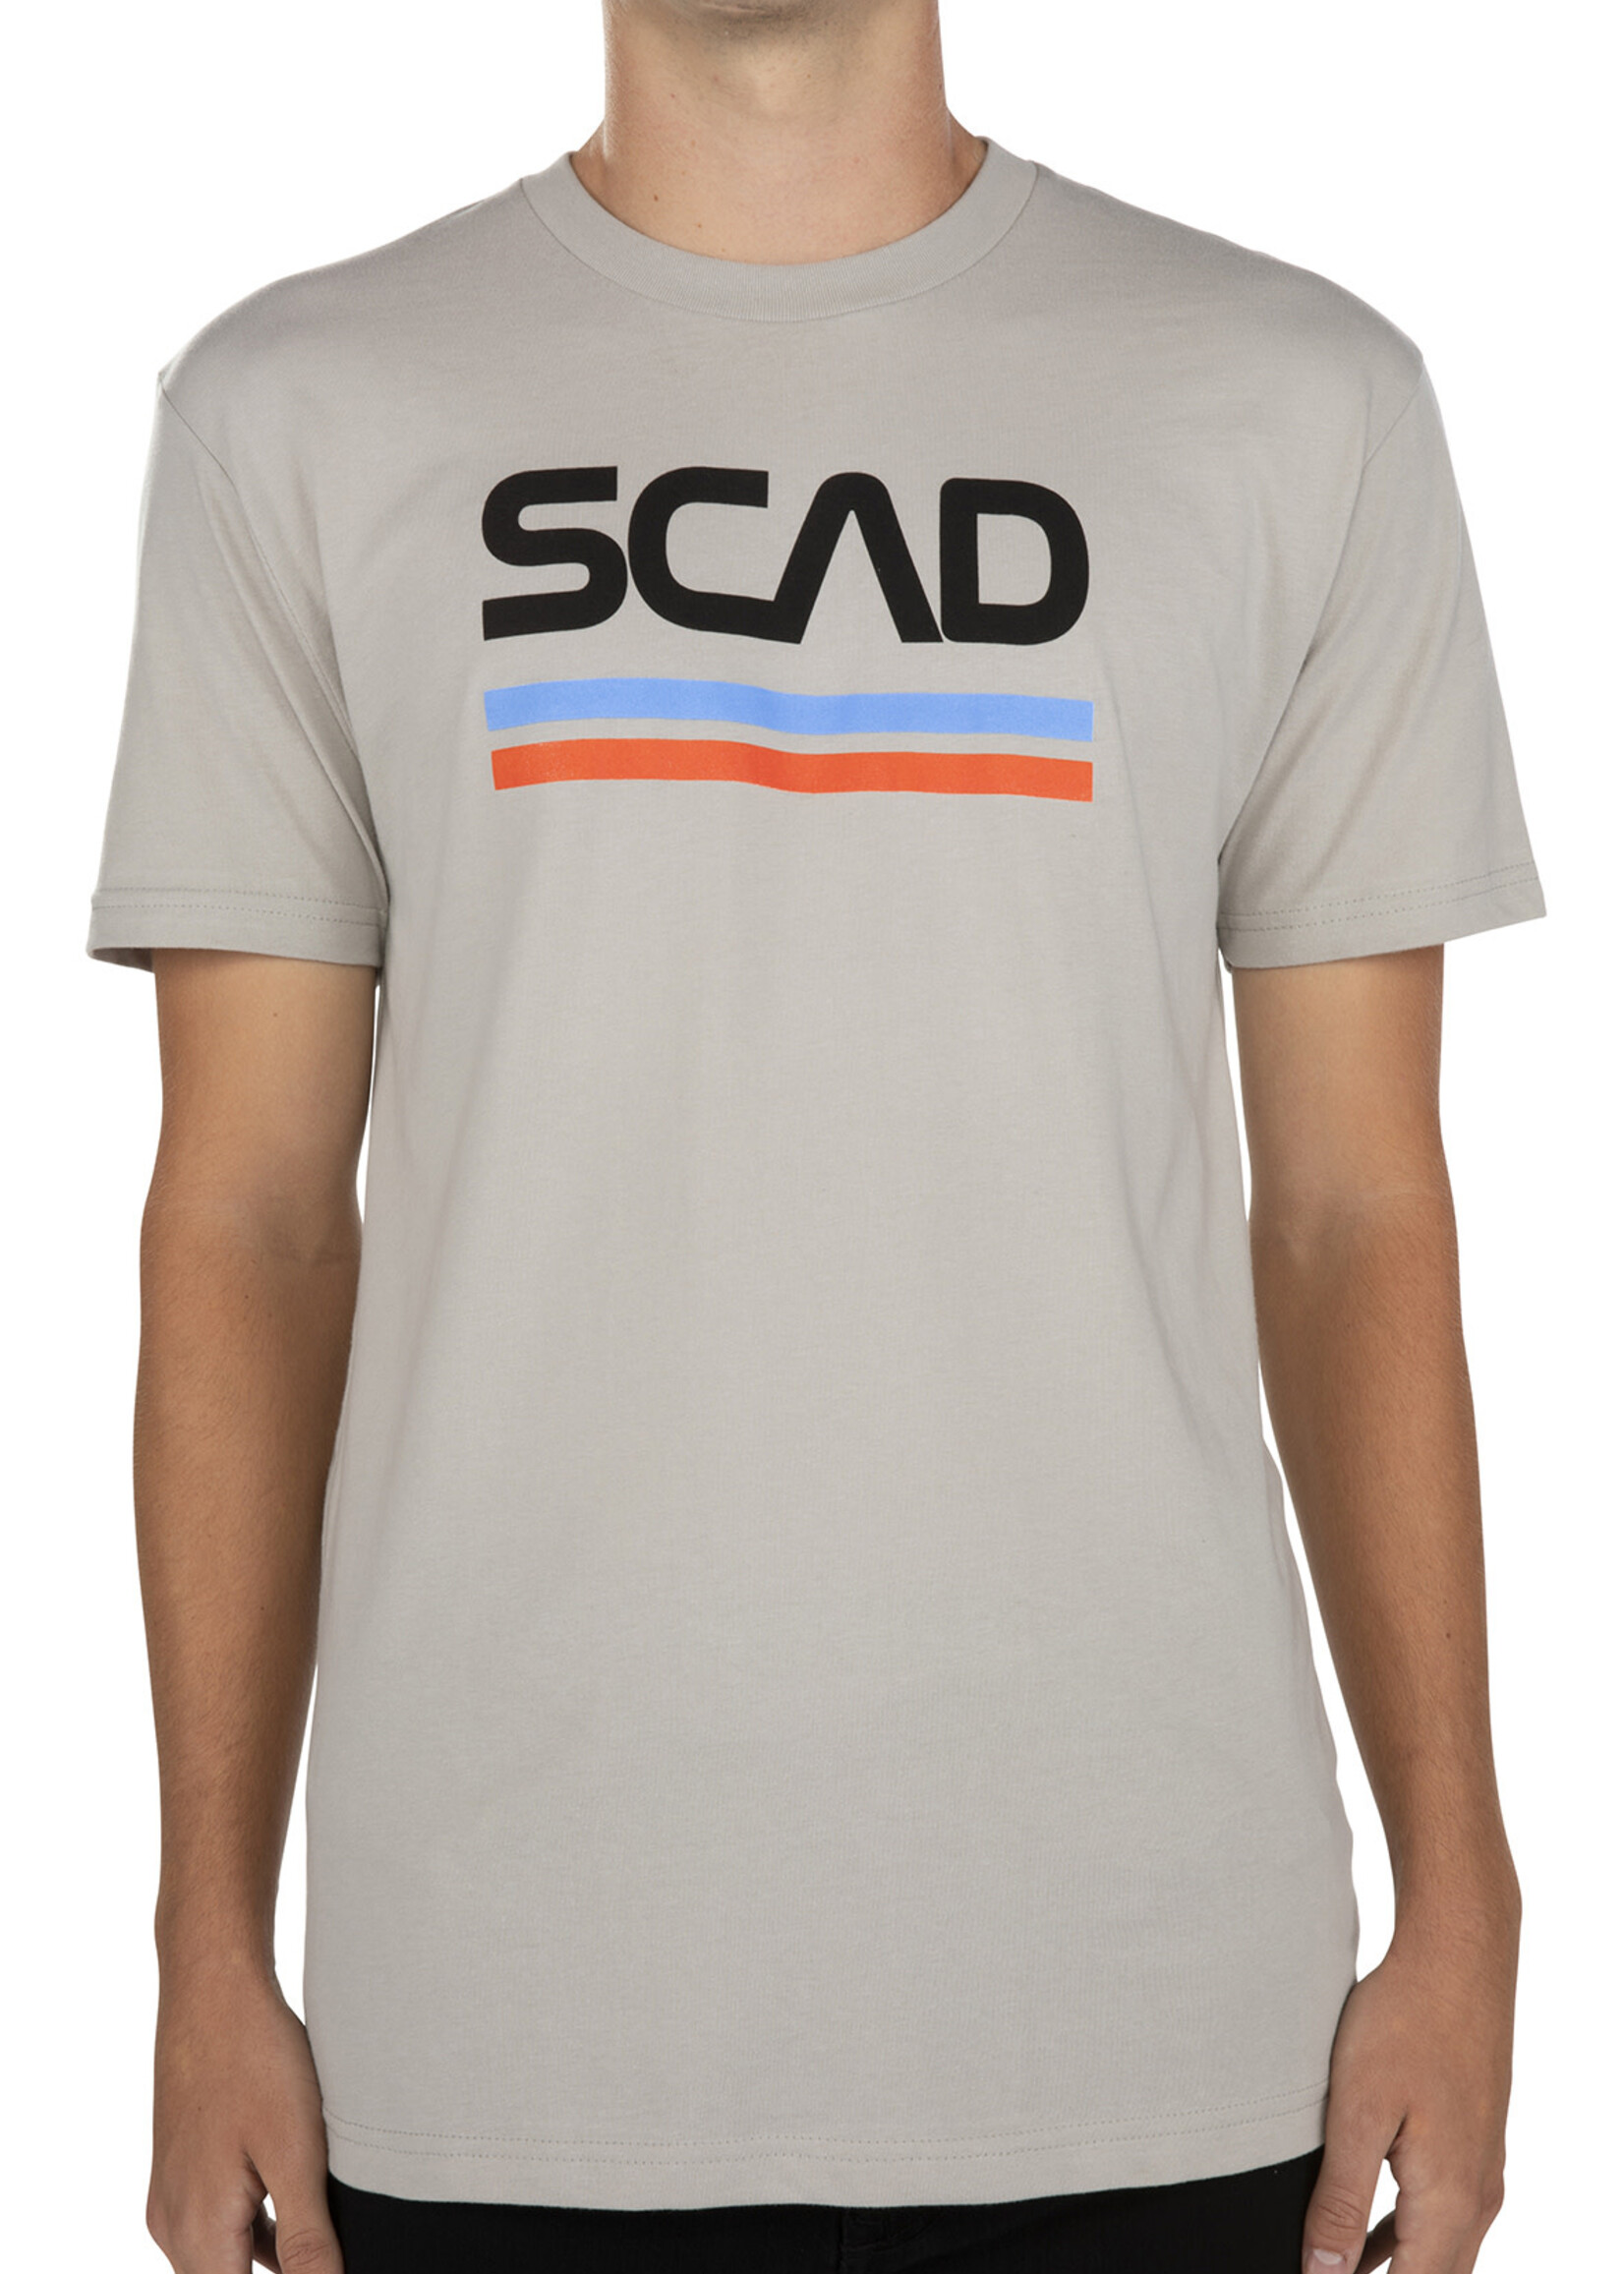 SCAD SCAD NASA T-Shirt